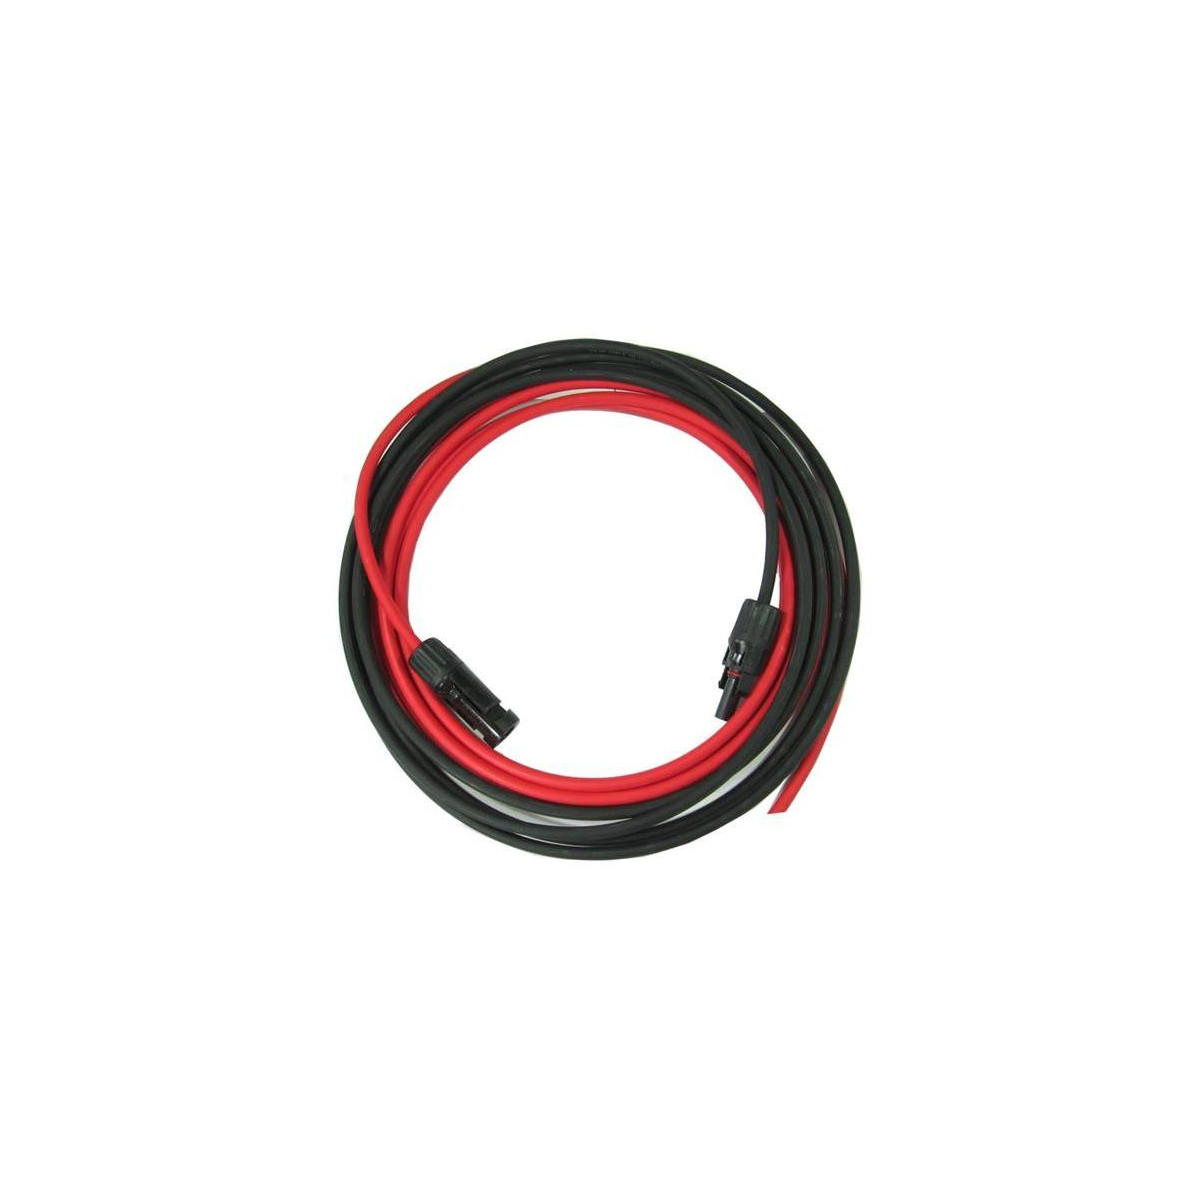 Solární kabel 4mm2, červený+černý s konektory MC4, 10m